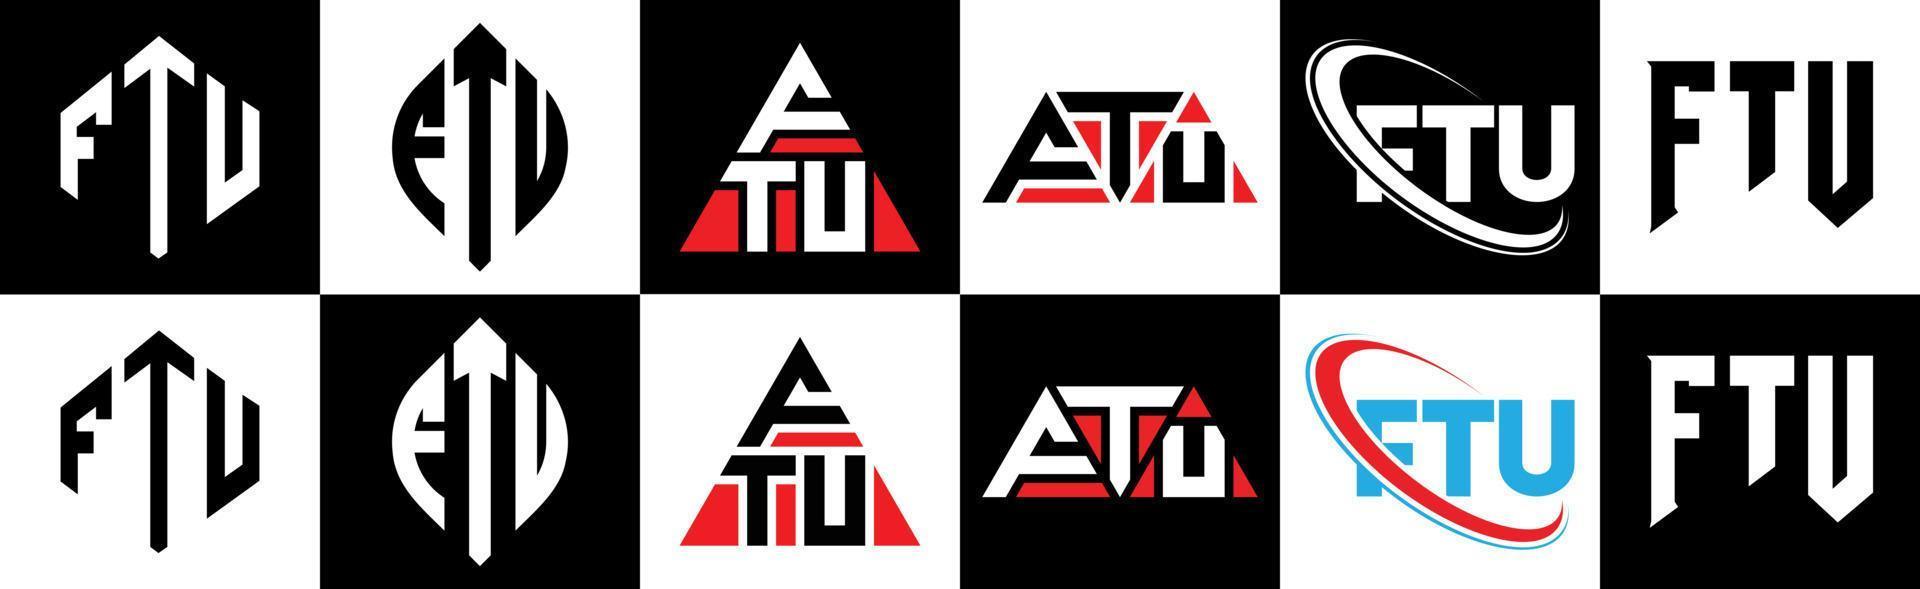 ftu-Buchstaben-Logo-Design in sechs Stilen. ftu Polygon, Kreis, Dreieck, Sechseck, flacher und einfacher Stil mit schwarz-weißem Buchstabenlogo in einer Zeichenfläche. ftu minimalistisches und klassisches Logo vektor